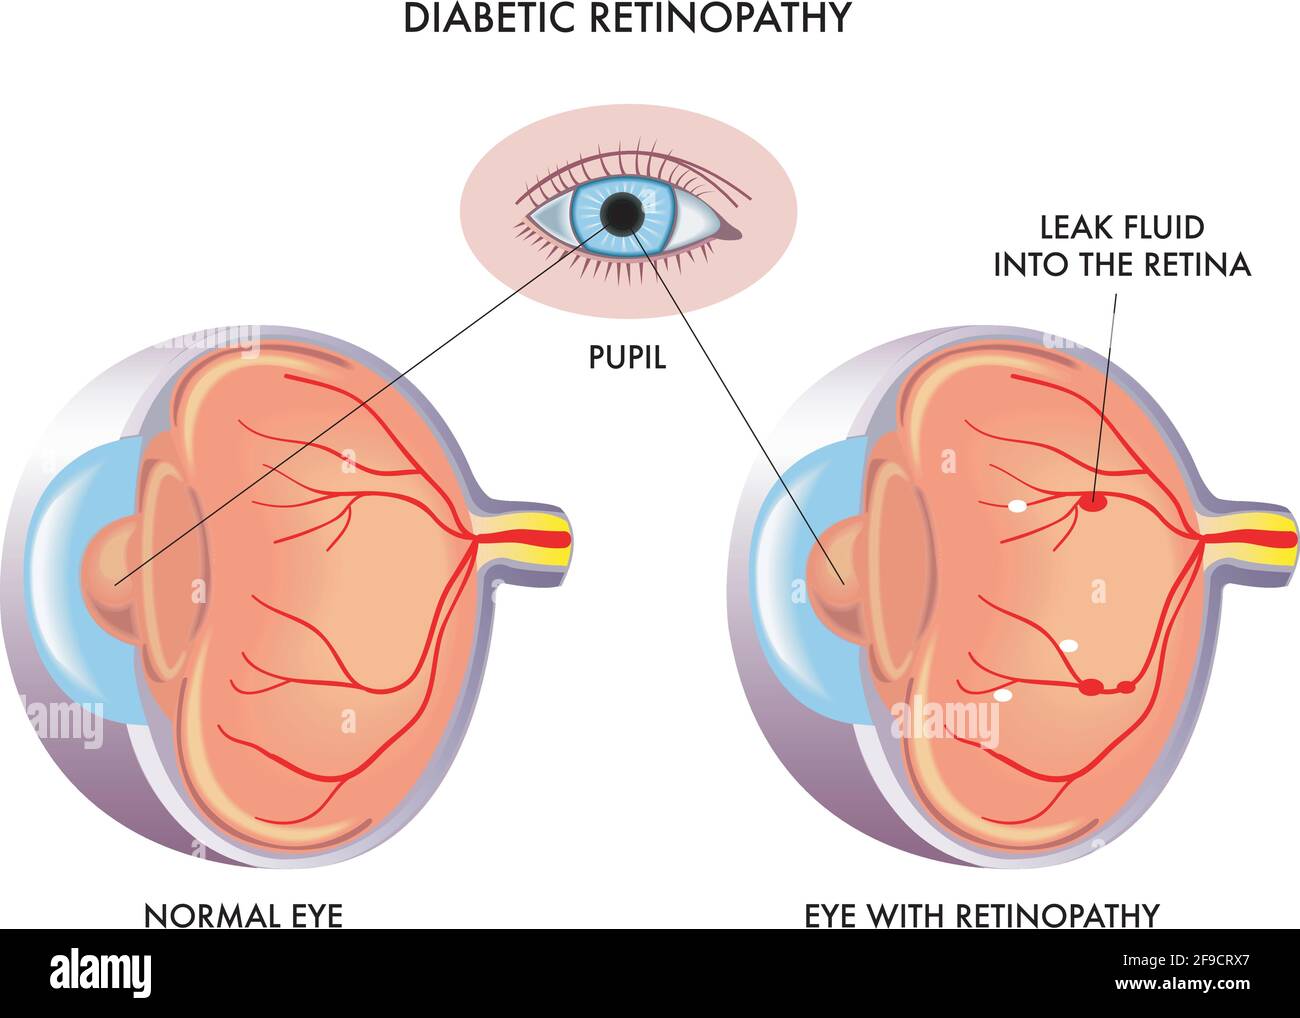 Medizinische Illustration vergleicht ein normales Auge mit einem mit diabetischer Retinopathie, mit Anmerkungen. Stock Vektor